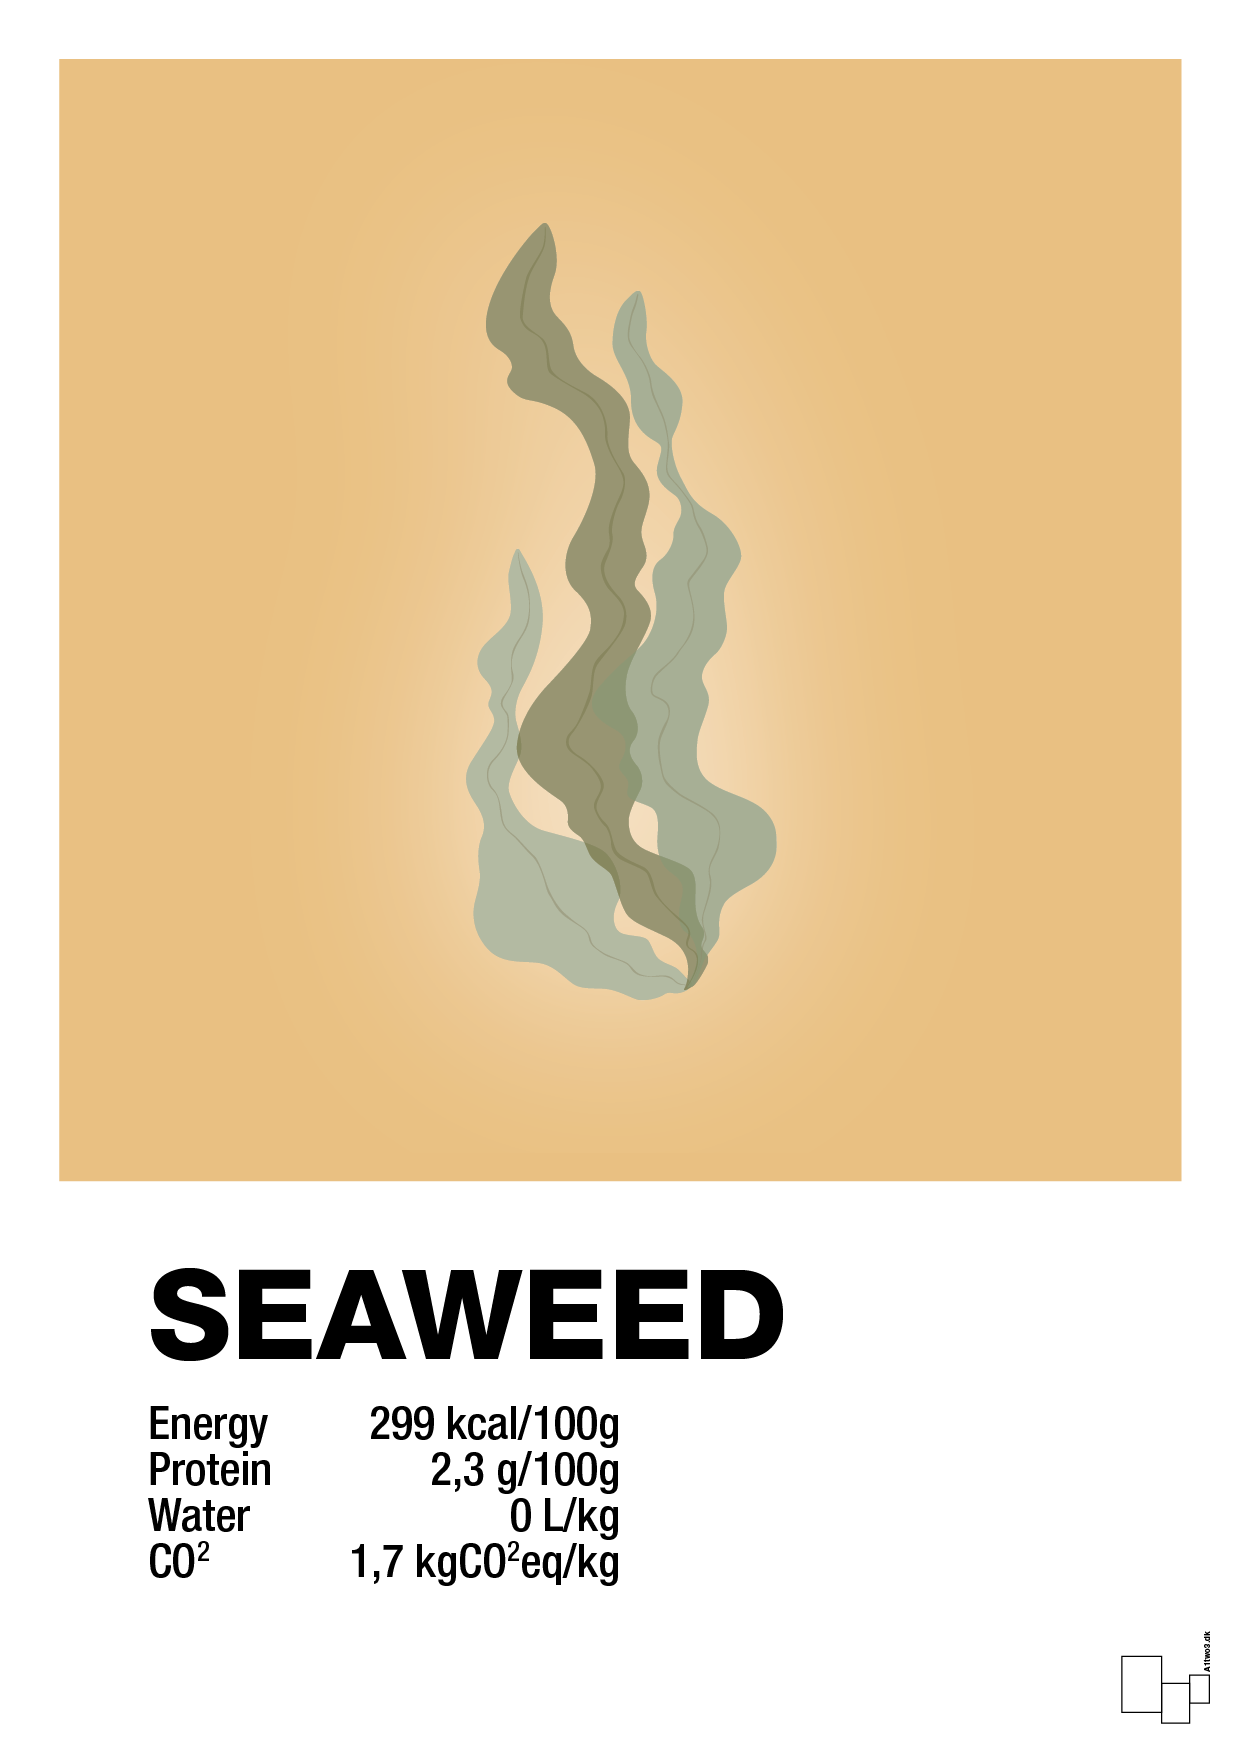 seaweed nutrition og miljø - Plakat med Mad & Drikke i Charismatic